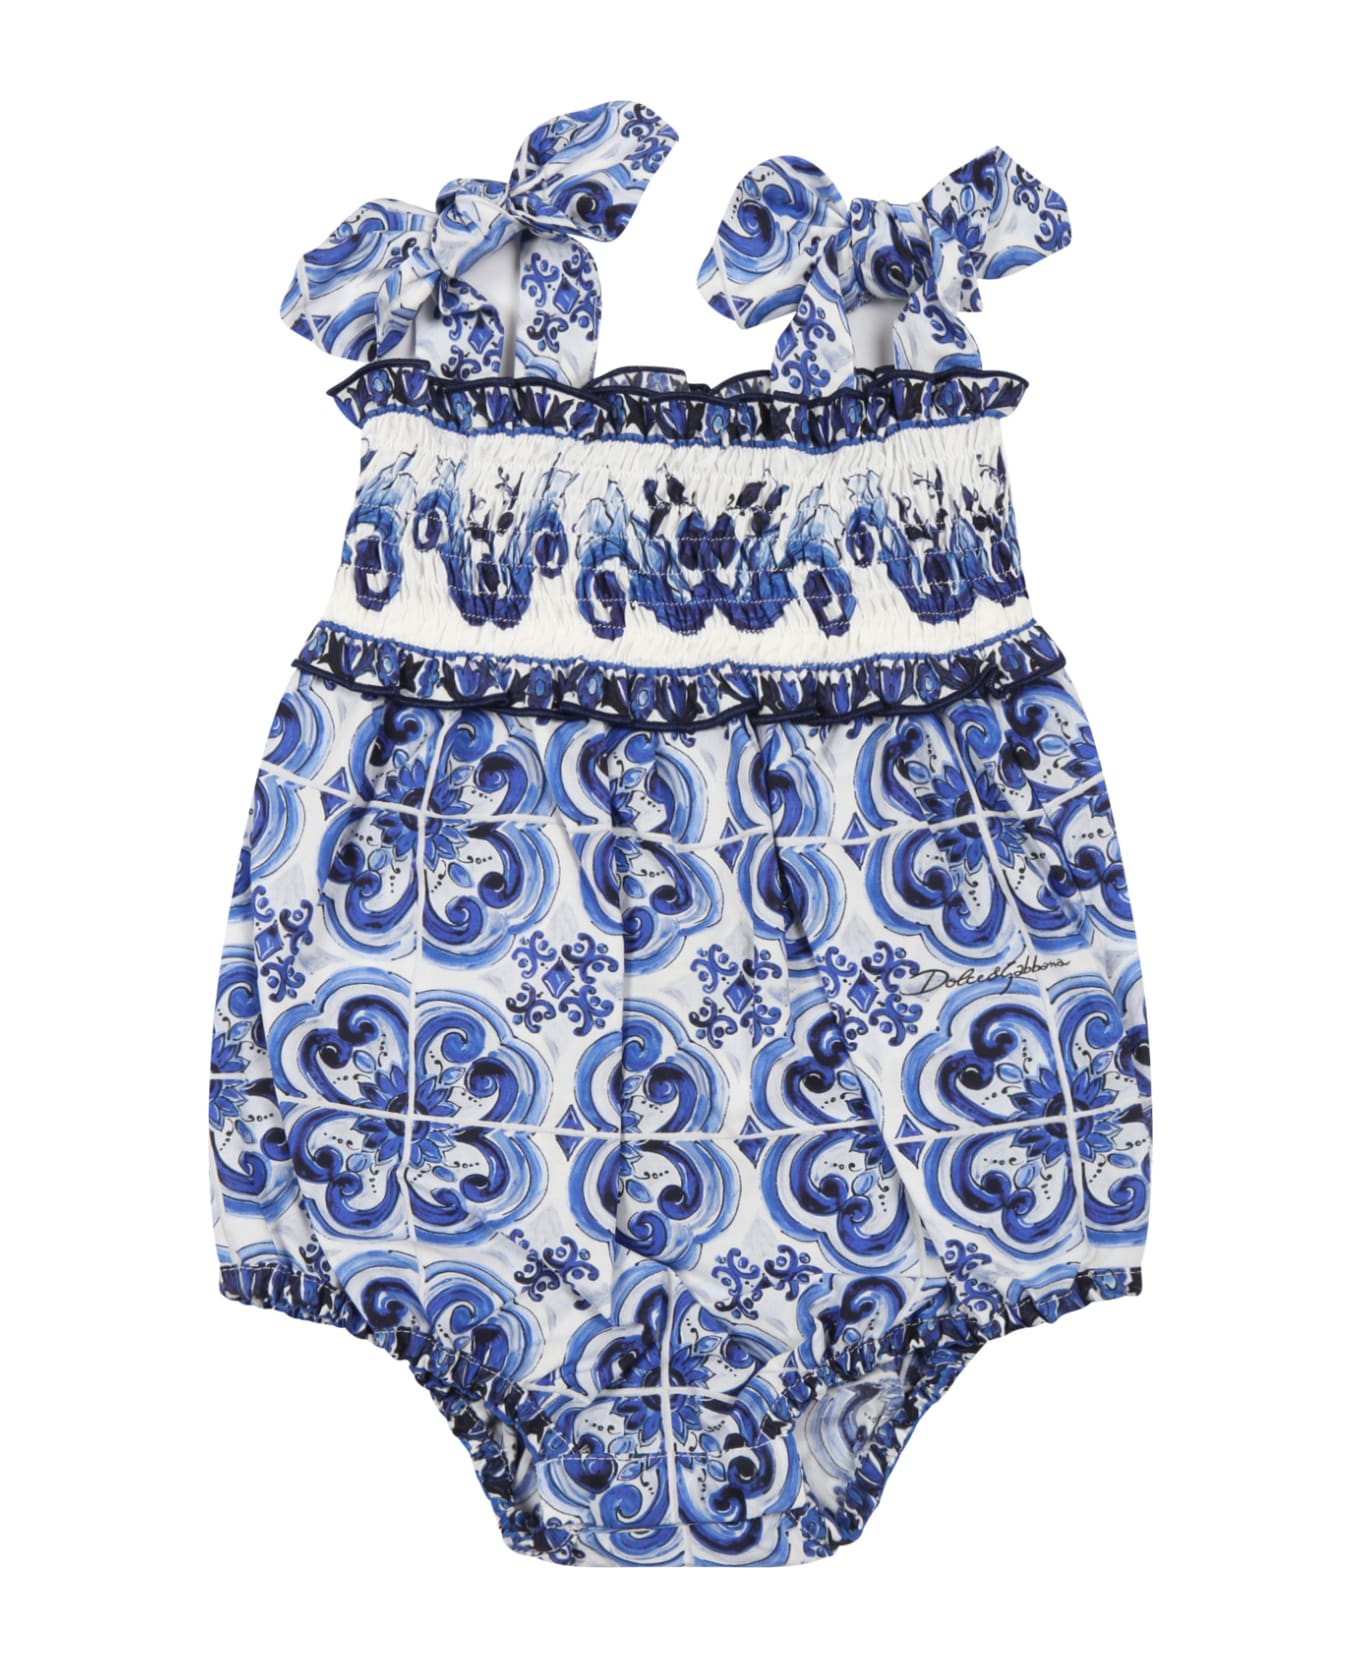 Dolce & Gabbana White Romper For Baby Girl - Multicolor